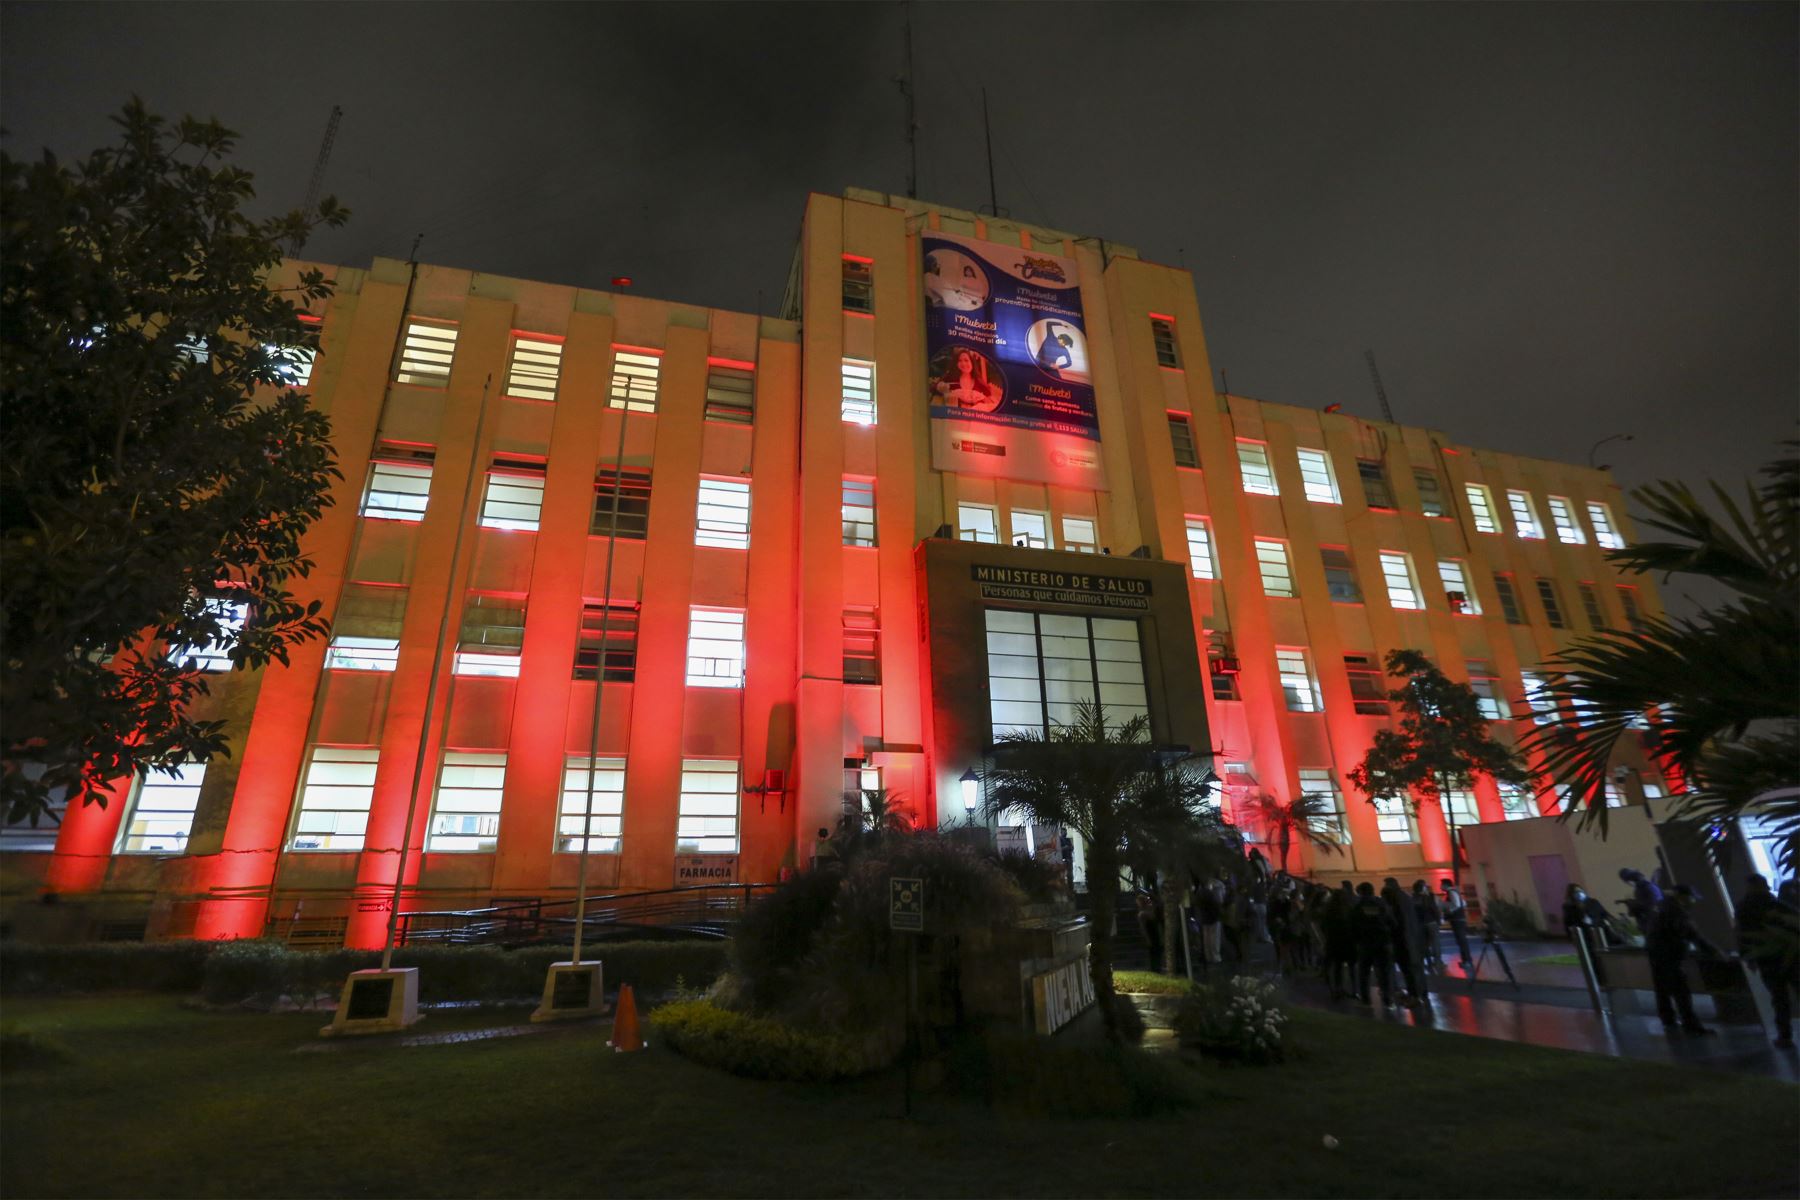 Sede del Ministerio de Salud y diversas instituciones públicas se iluminaron de rojo en conmemoración del Día Mundial de Lucha contra el Sida.
Foto: Minsa